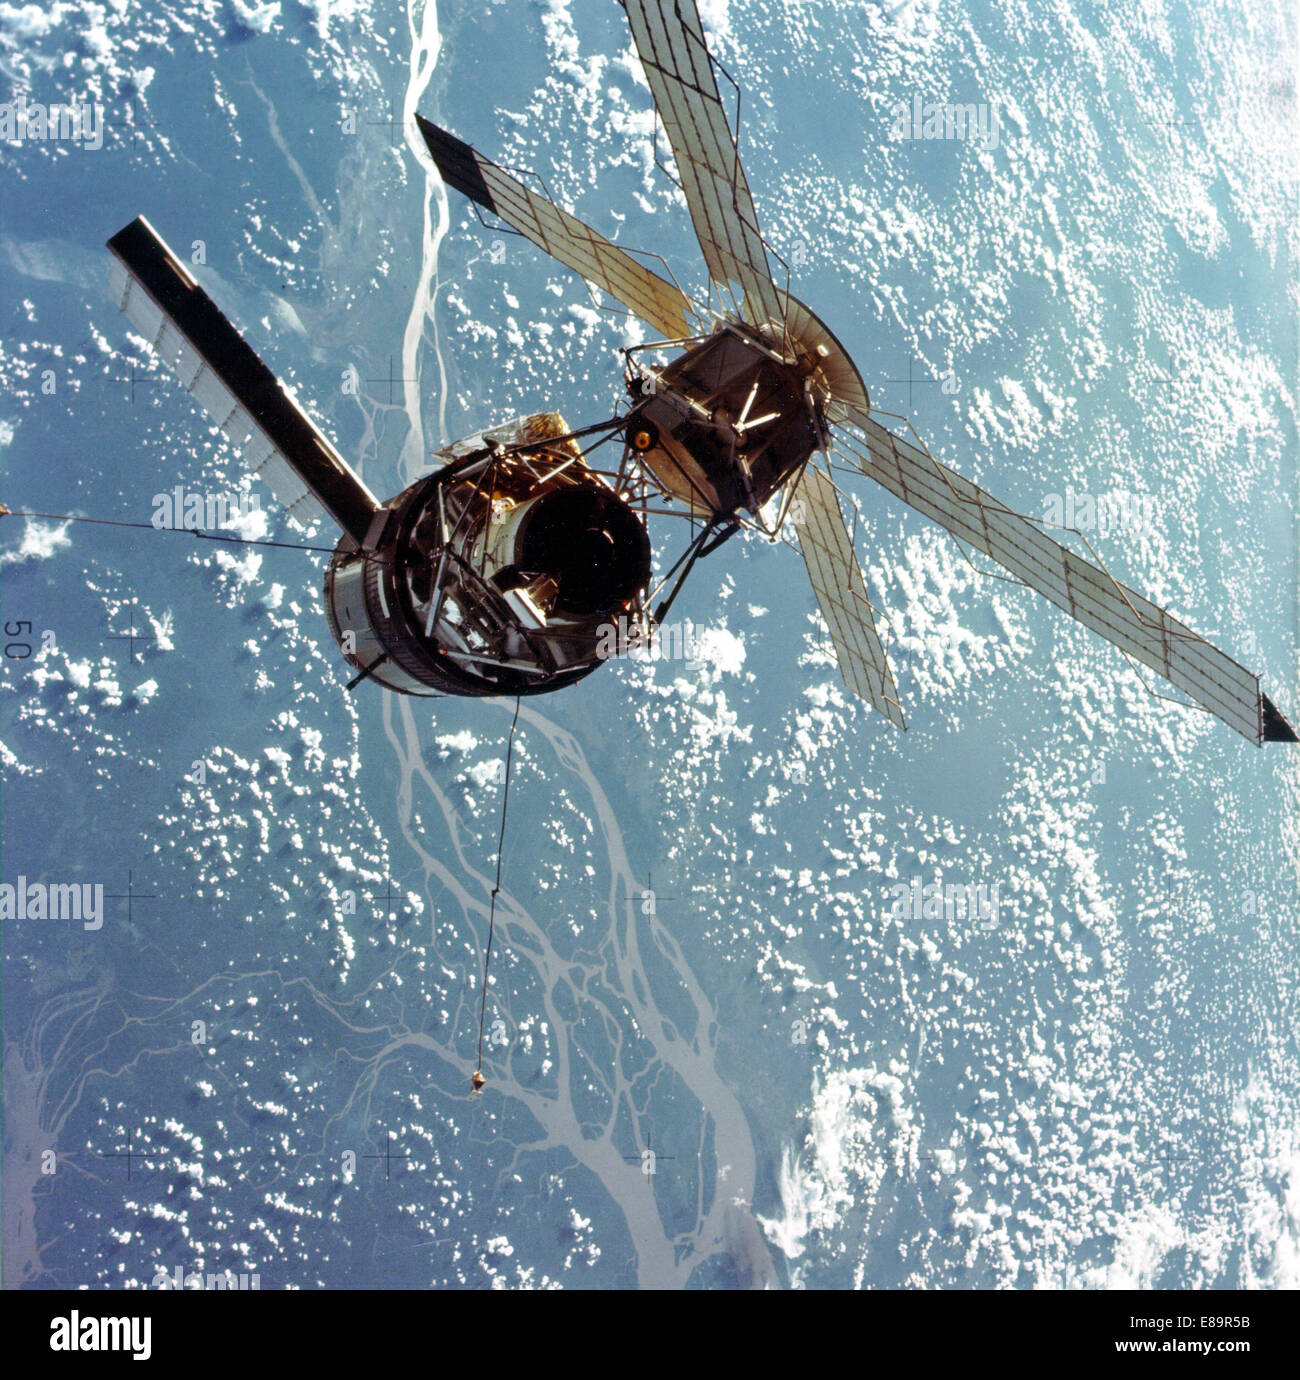 (28 Juli 1973) Eine Detailansicht der Skylab-Raumstation fotografiert vor dem Hintergrund der Erde von der Skylab 3 Befehl/Testmodul während halten Manöver vor der Docking-Station. Ilba Grande de Gurupa Bereich des brasilianischen Amazonas Vally kann unten gesehen werden. An Bord der Kommandokapsel waren Astronauten, Alan L. Bean, Owen K. Garriott und Jack R. Lousma, der mit der Skylab-Raumstation in der Erdumlaufbahn 59 Tage blieb. Dieses Bild wurde mit einem handgeführten 70 mm Hasselblad-Kamera mit einem 100 mm-Objektiv und SO-368 mittelschnell Ektachrome Film aufgenommen. Beachten Sie die solar Array Komplettsystem Stockfoto